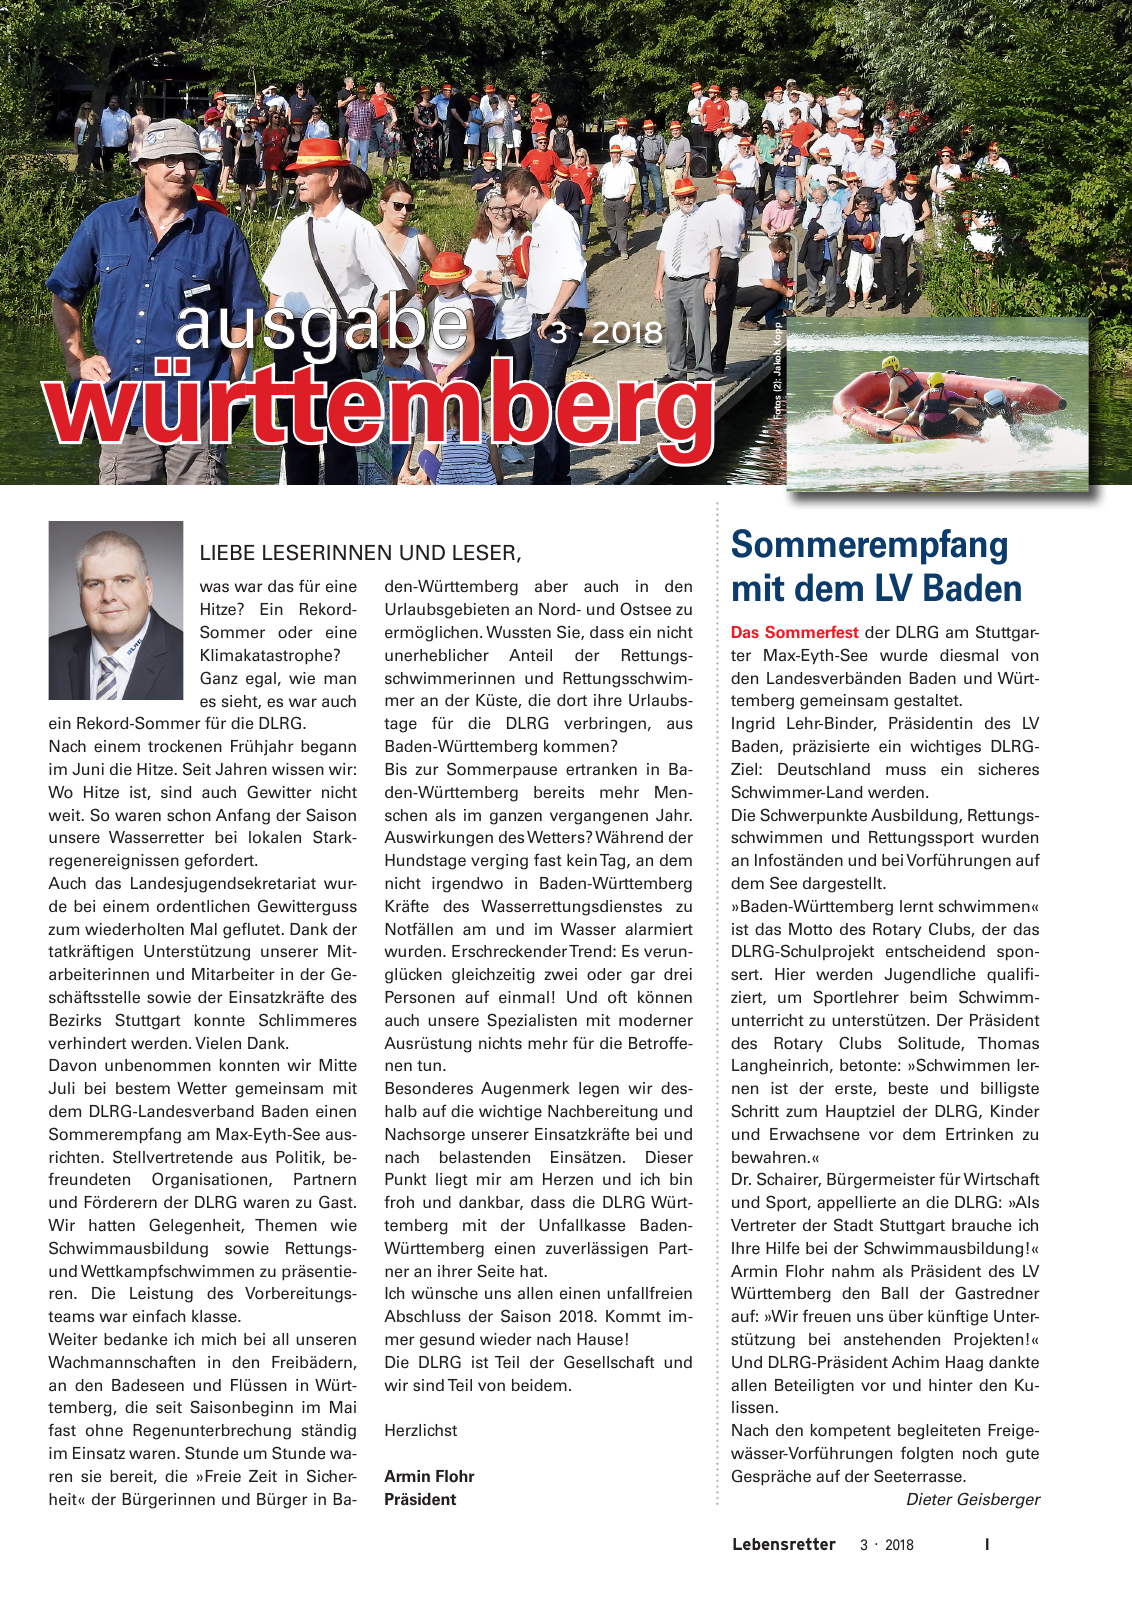 Vorschau Lebensretter 3/2018 - Regionalausgabe Württemberg Seite 3